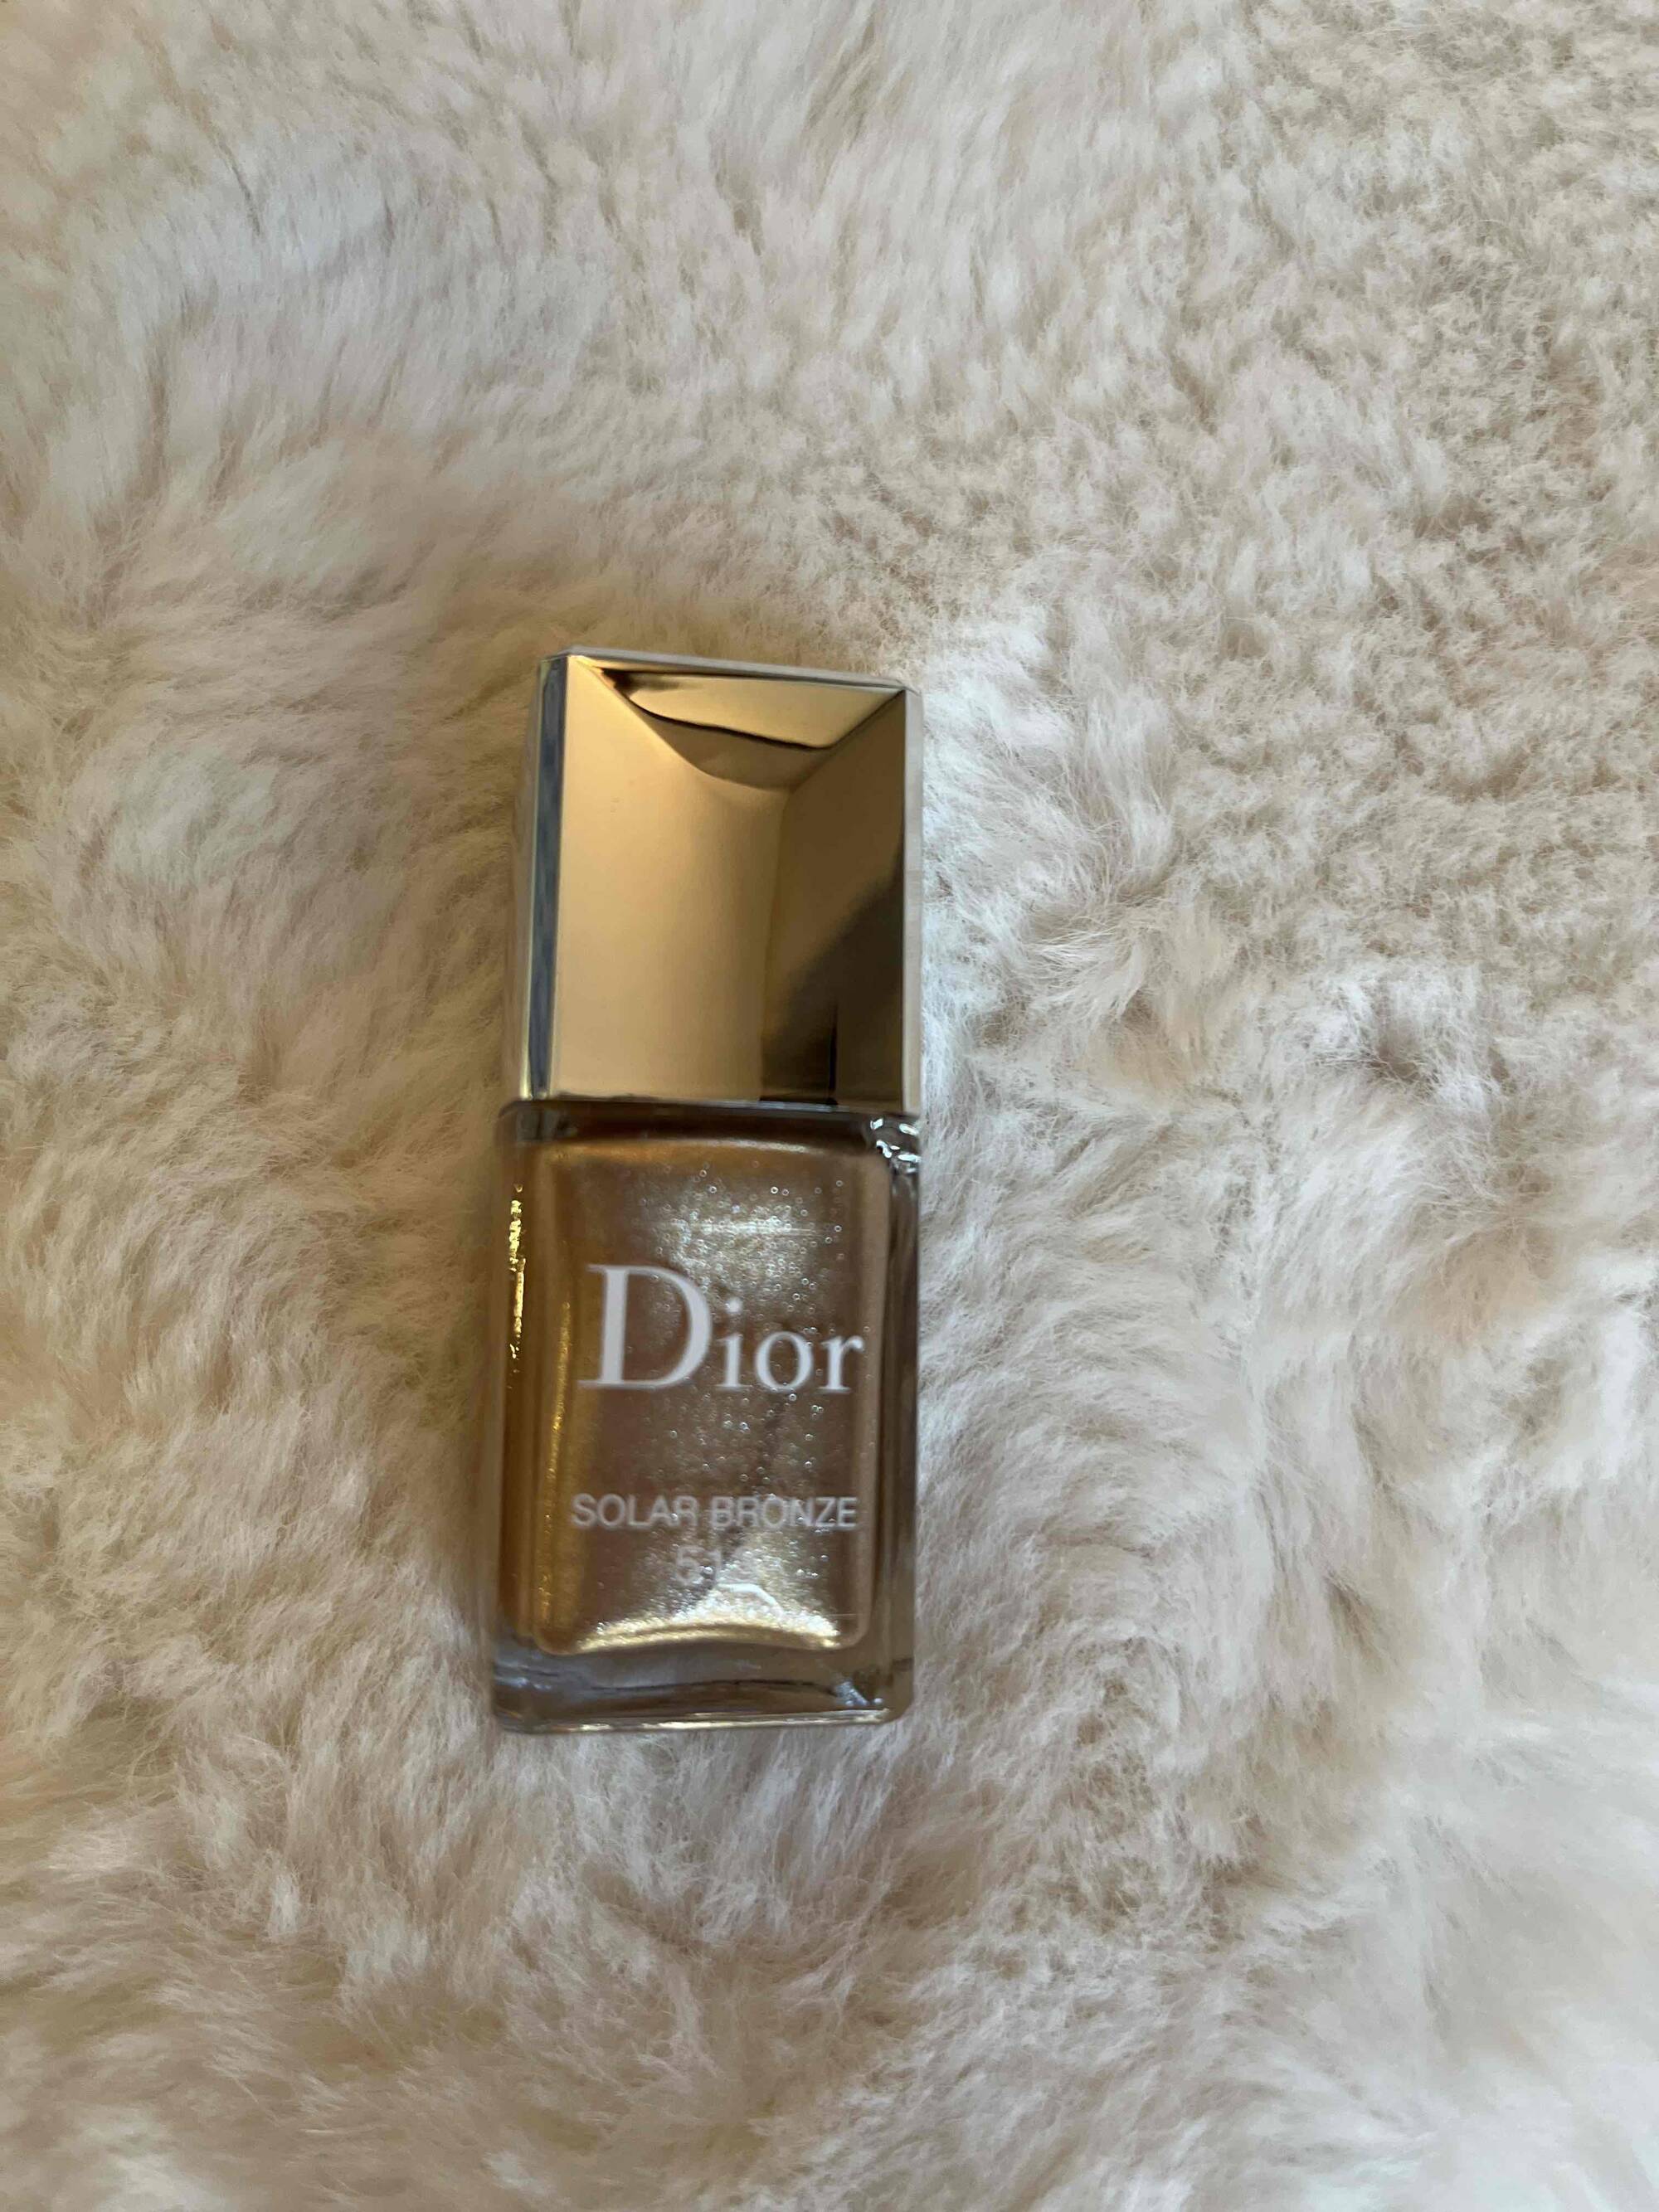 DIOR - Solar bronze 513 - Dior vernis effet gel